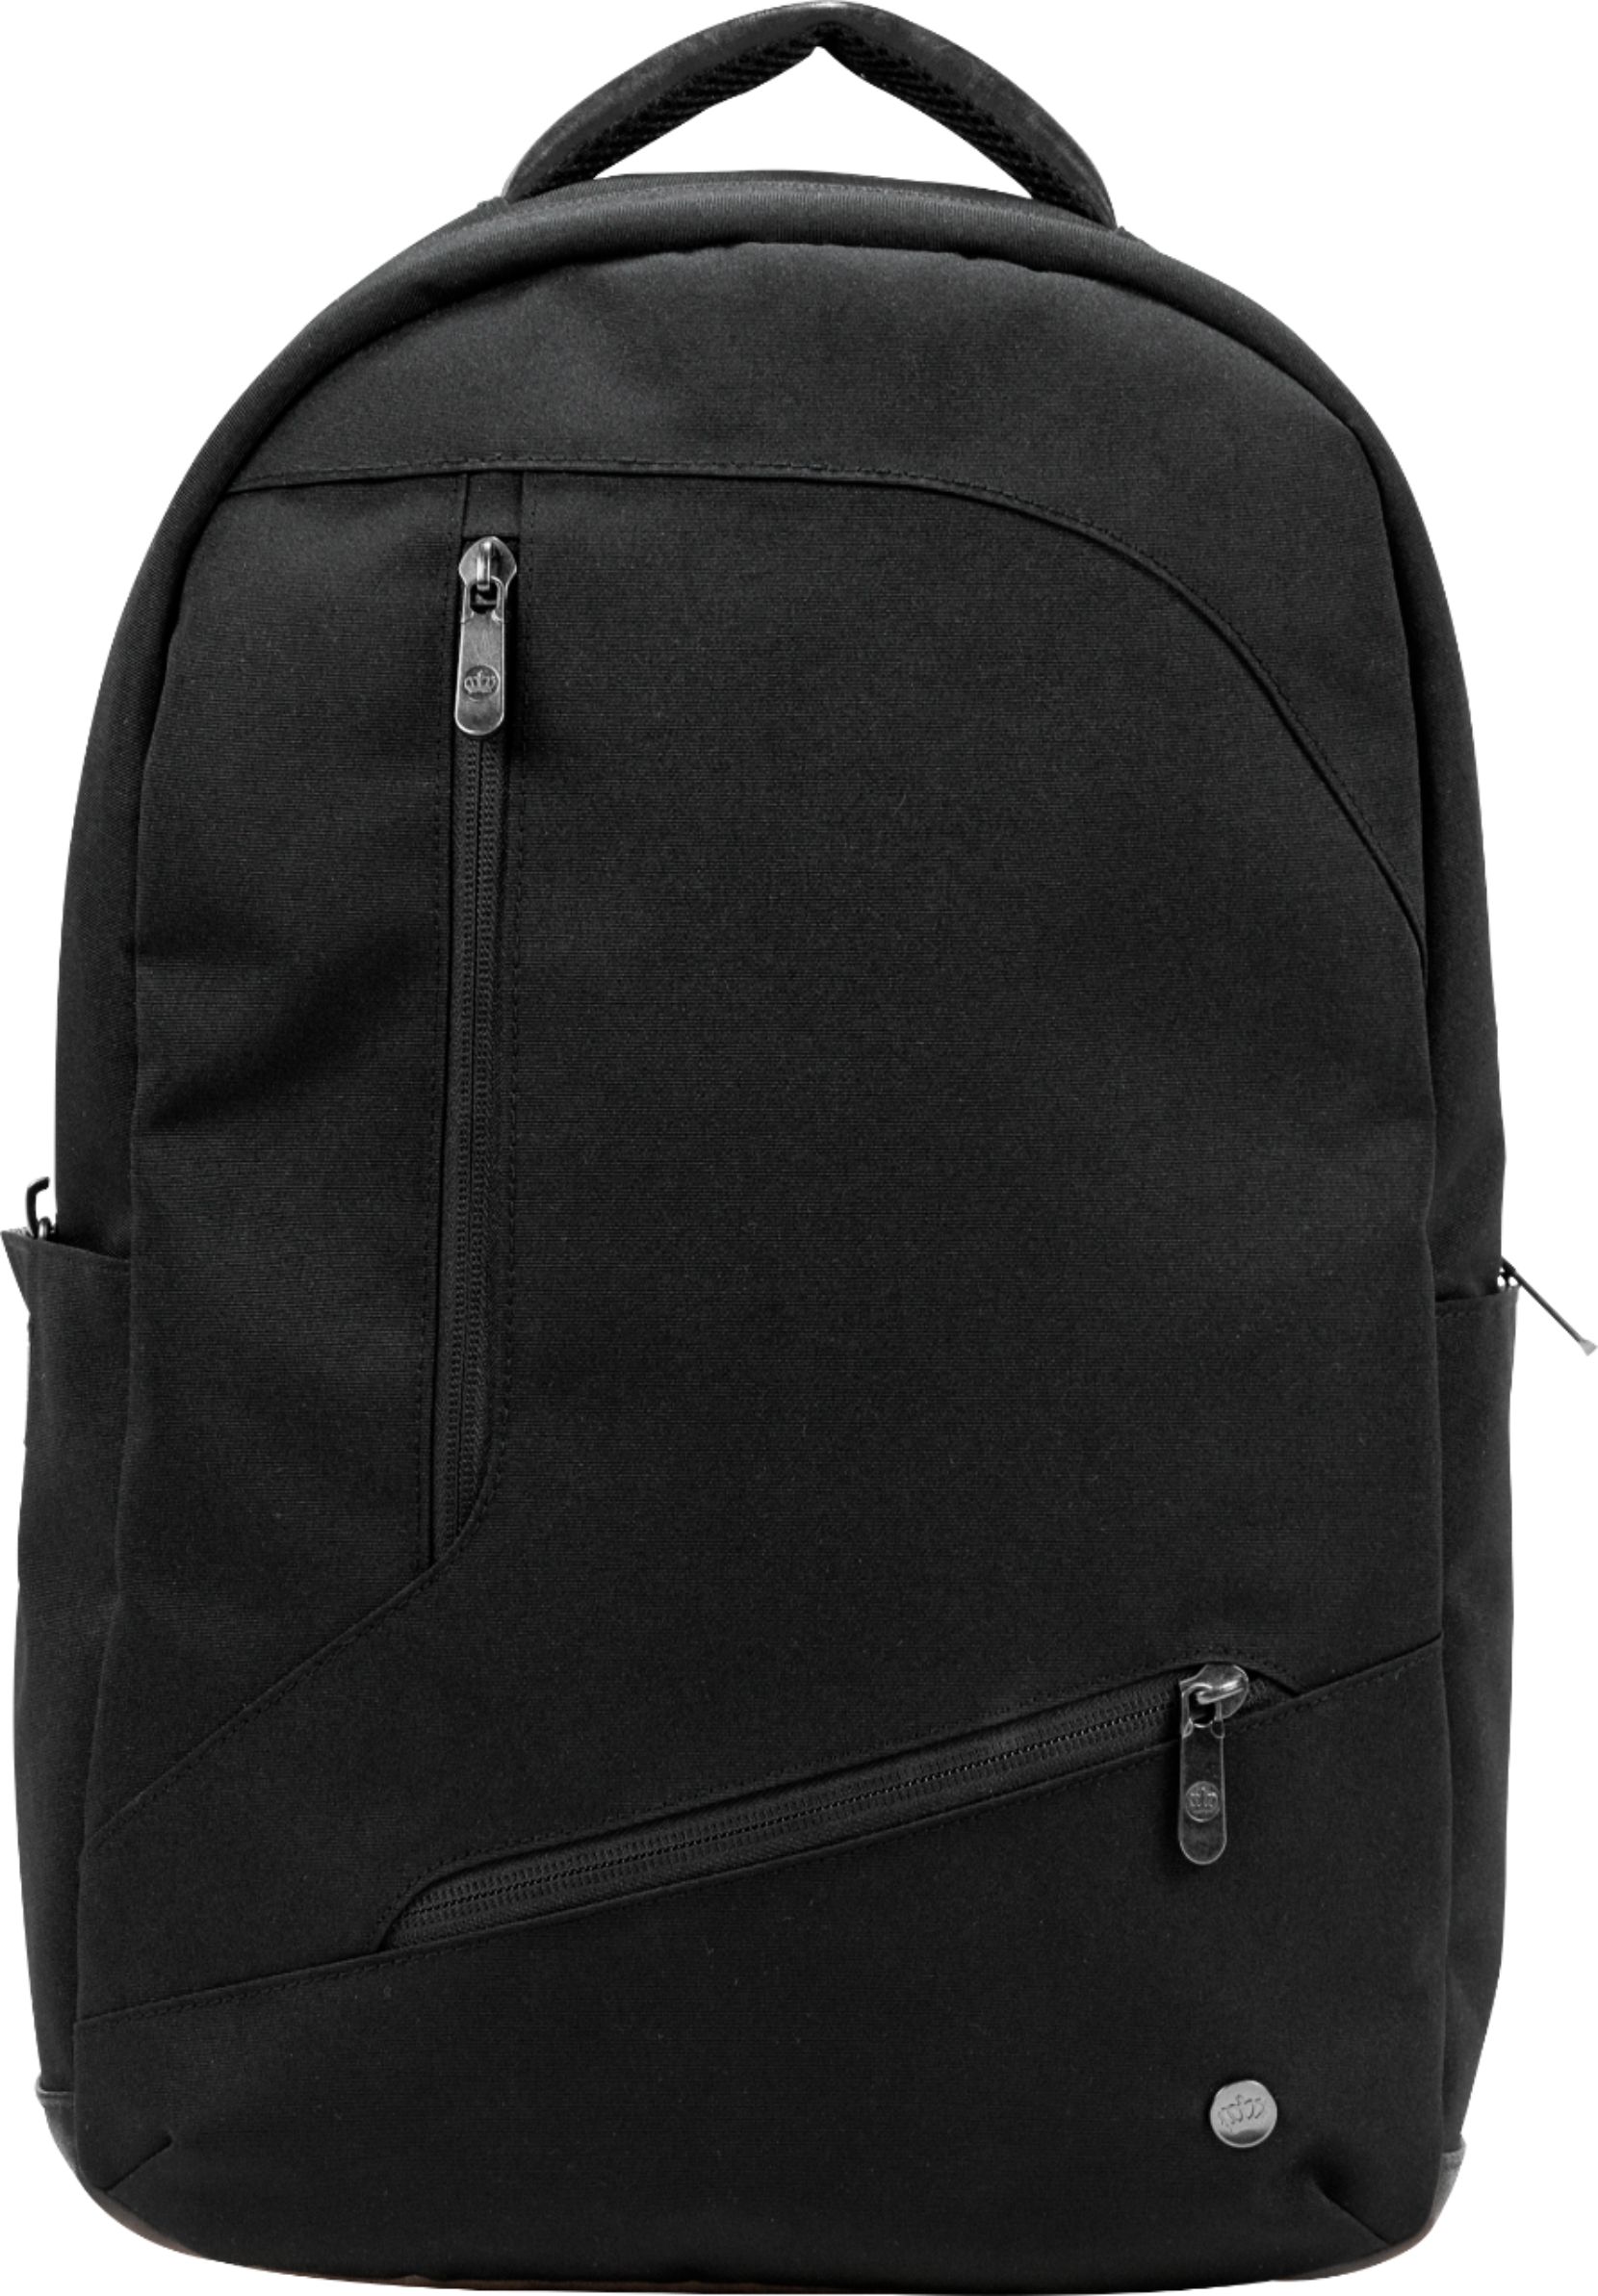 PKG - Backpack for 16 inch Laptop - Black - .99